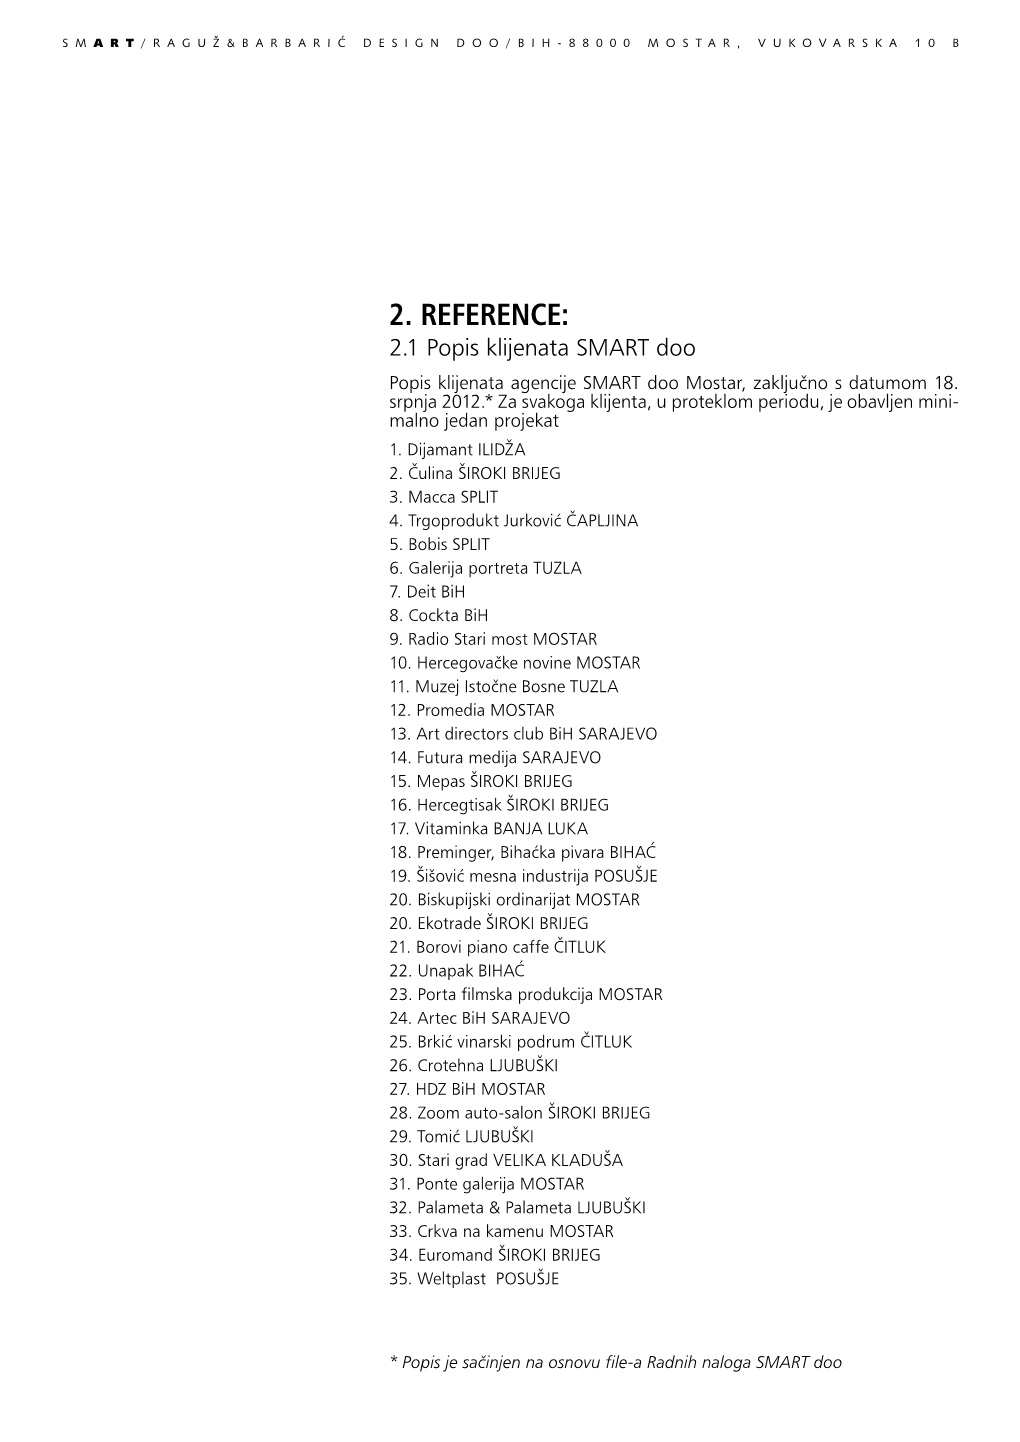 2. REFERENCE: 2.1 Popis Klijenata SMART Doo Popis Klijenata Agencije SMART Doo Mostar, Zaključno S Datumom 18